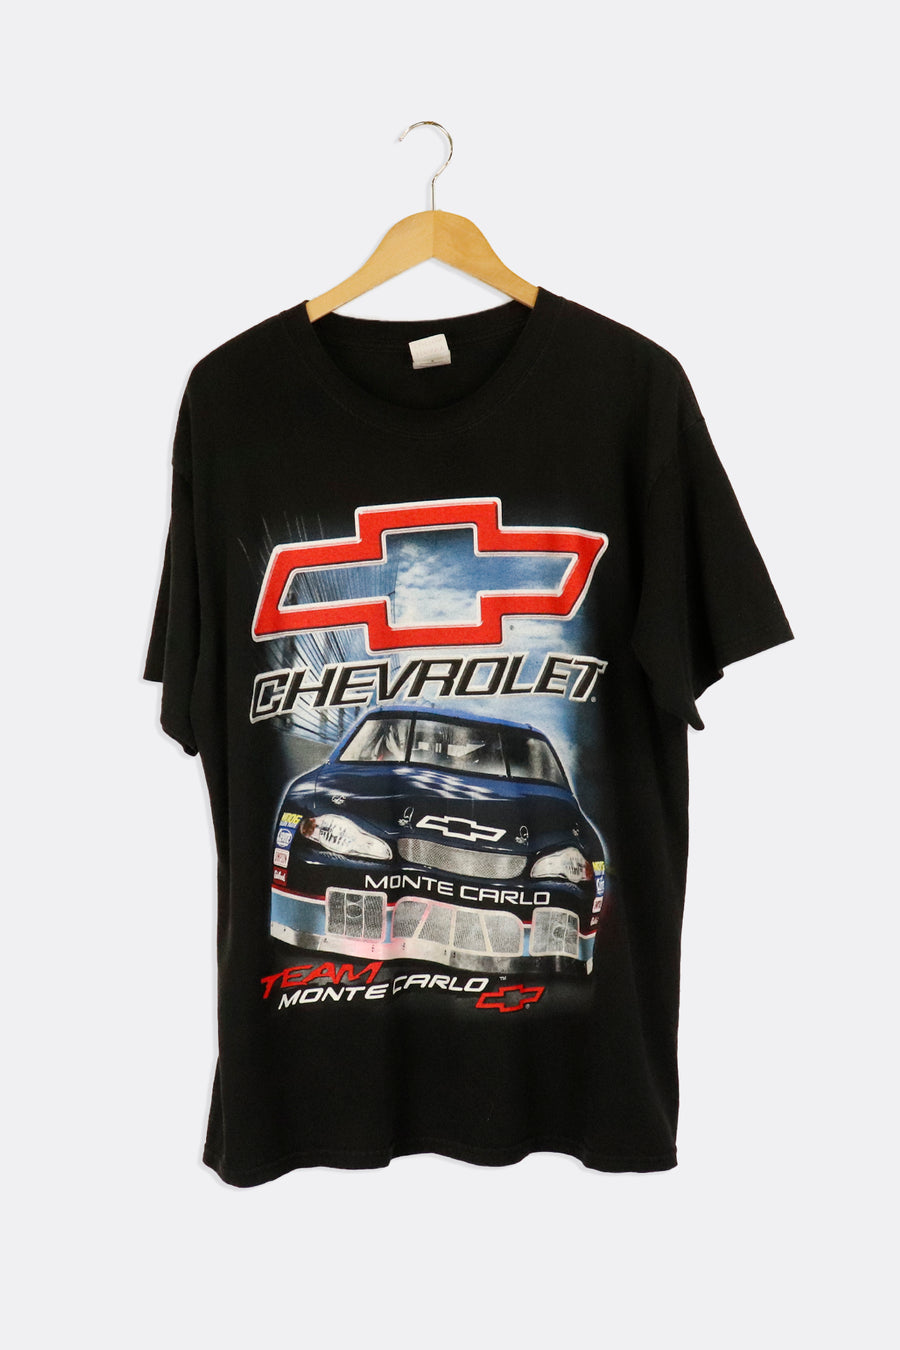 Vintage 2004 Nascar Chevrolet Team Monte Carlo Tour Graphic T Shirt Sz L